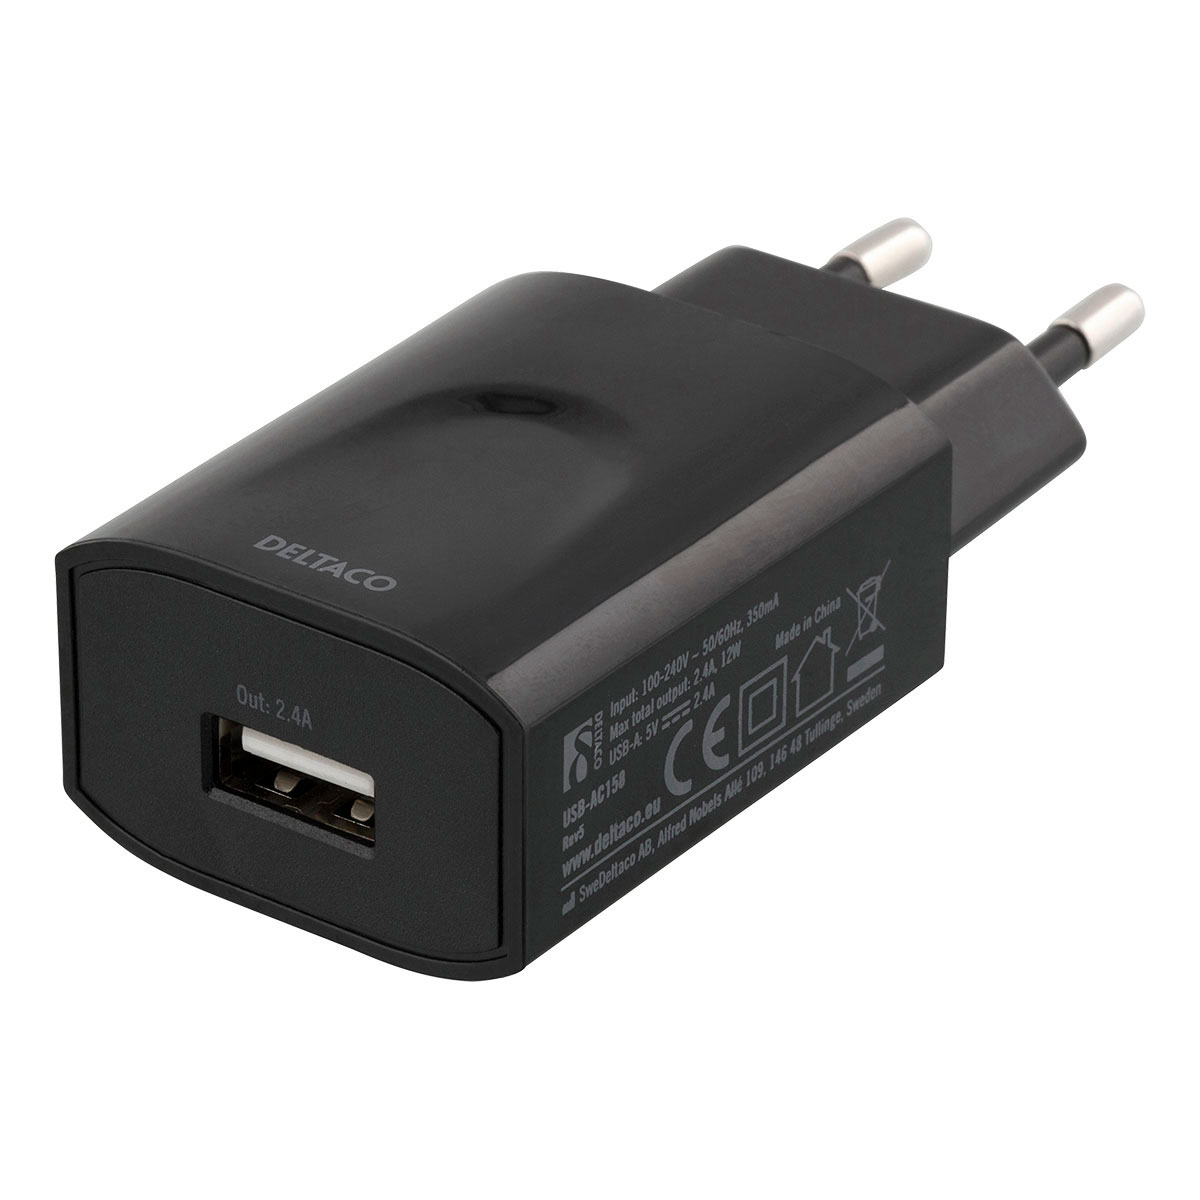 Sudan ufravigelige Hysterisk USB oplader til stikkontakt - 1xUSB 2400mA (Sort) - Køb oplader